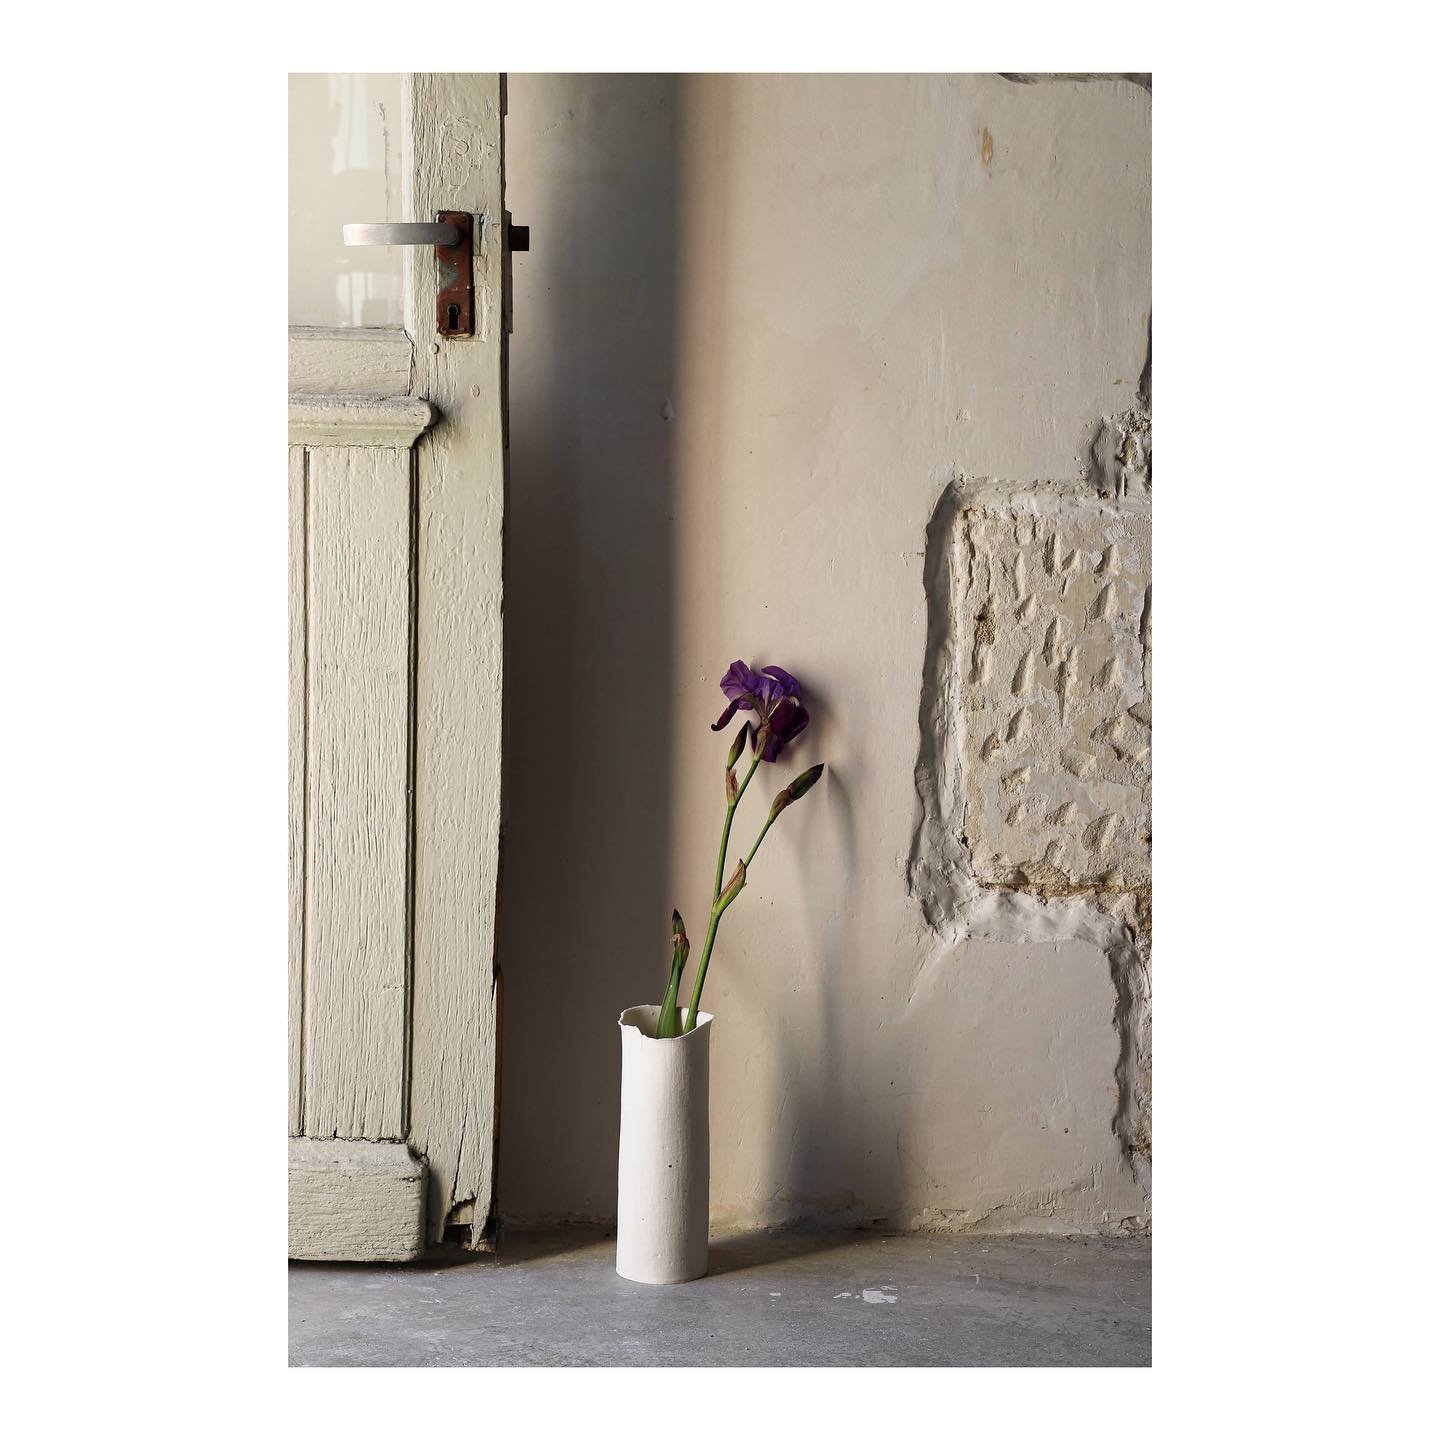 Ouvrir la porte de l&rsquo;atelier et profiter de l&rsquo;air printanier. 
-
Open the workshop door and enjoy the spring air.

#epure#ceramique#artisans#humancraft#workshop#tiles#spring#flowers#linencollection#porcelaine#white#artworks#handmade#savoi